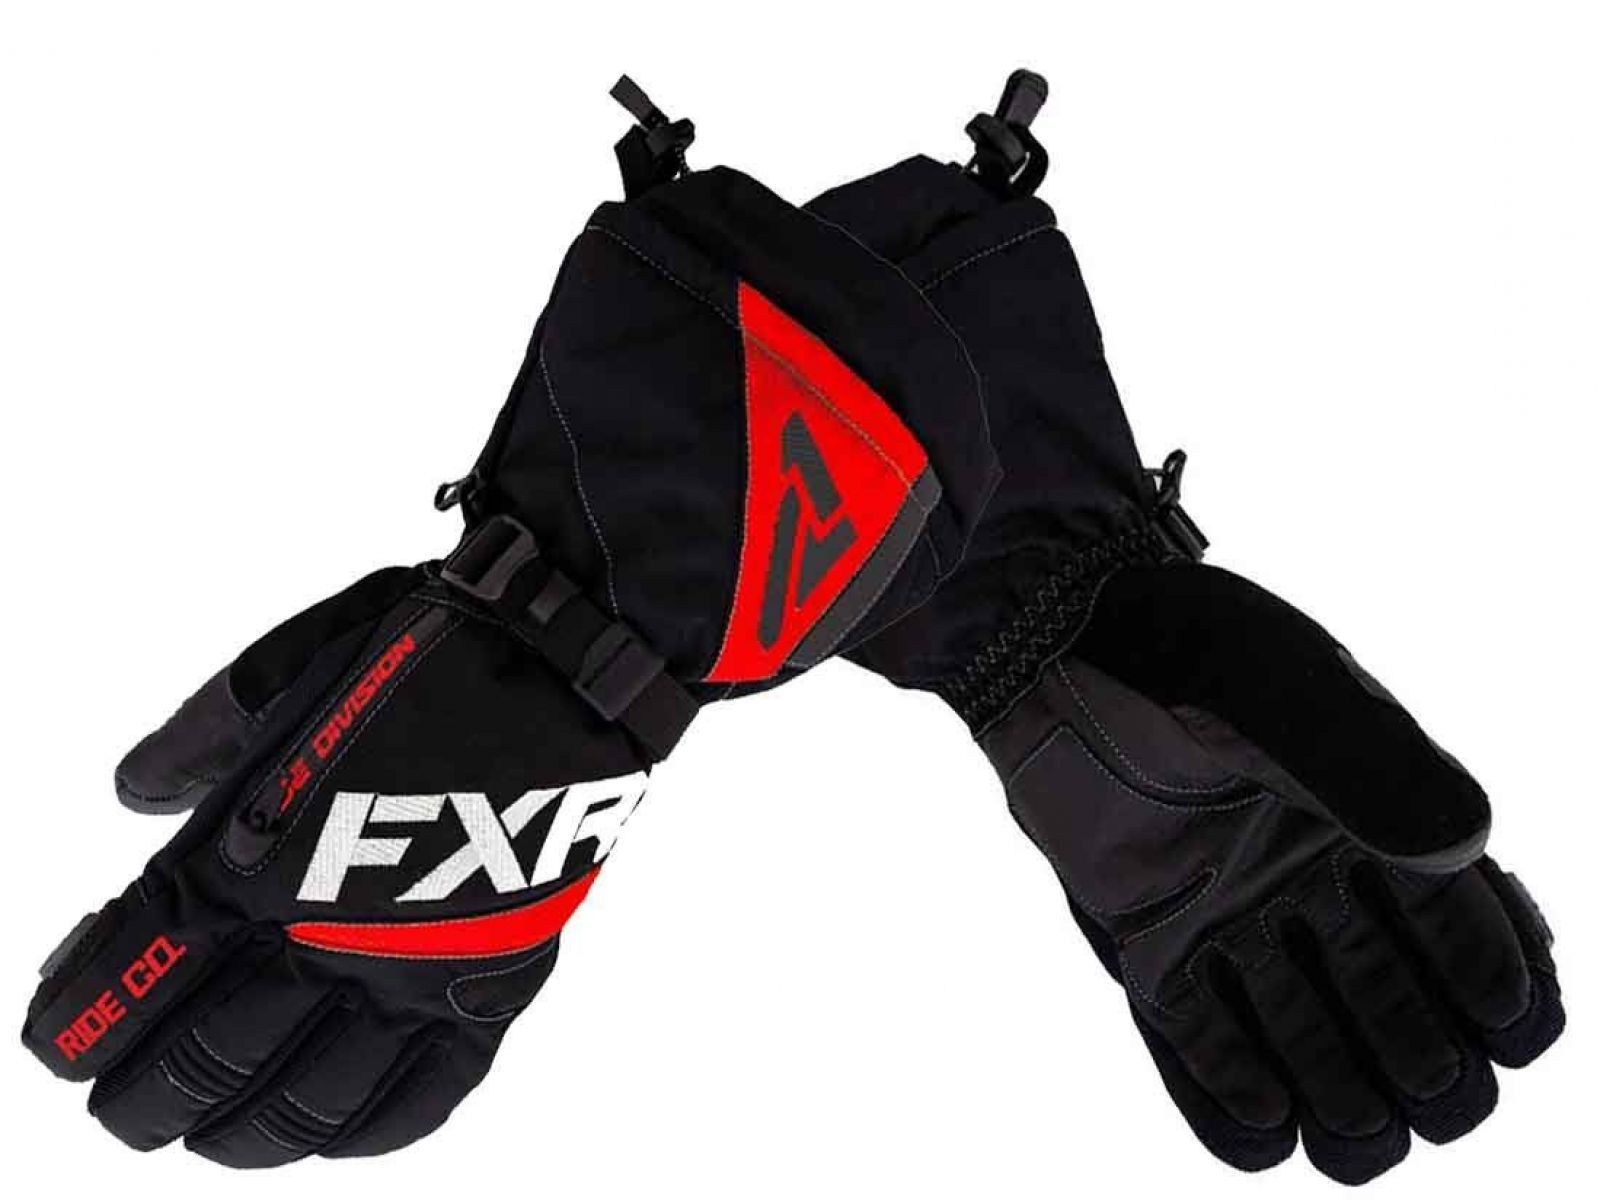 Снегоходные перчатки FXR FUEL 22 Black/Red